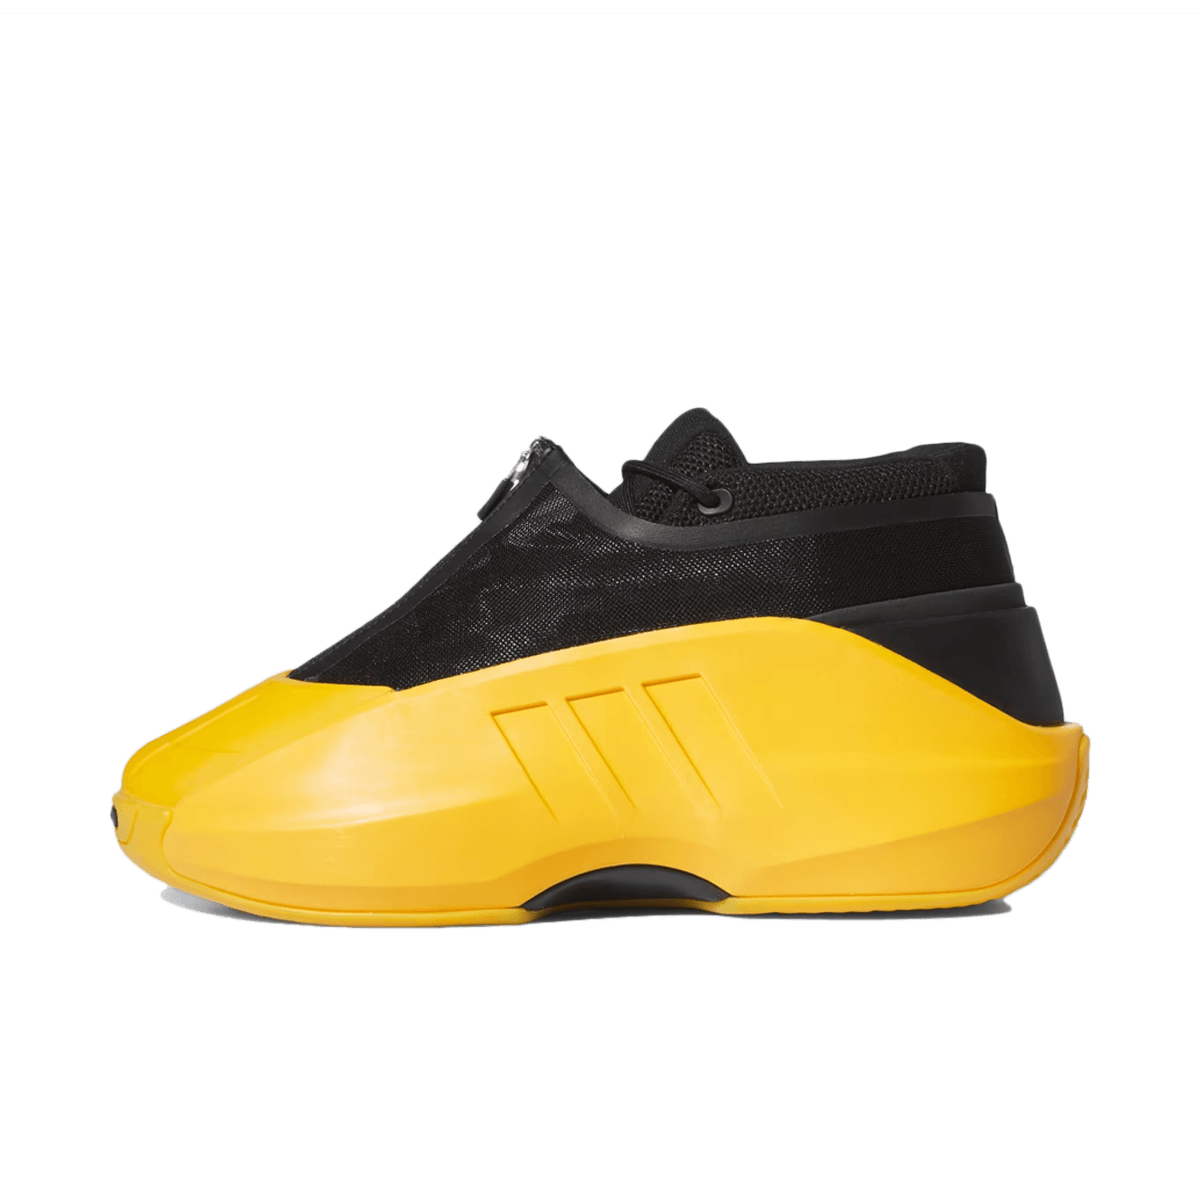 adidas Crazy IIInfinity 'Crew Yellow' IG6157